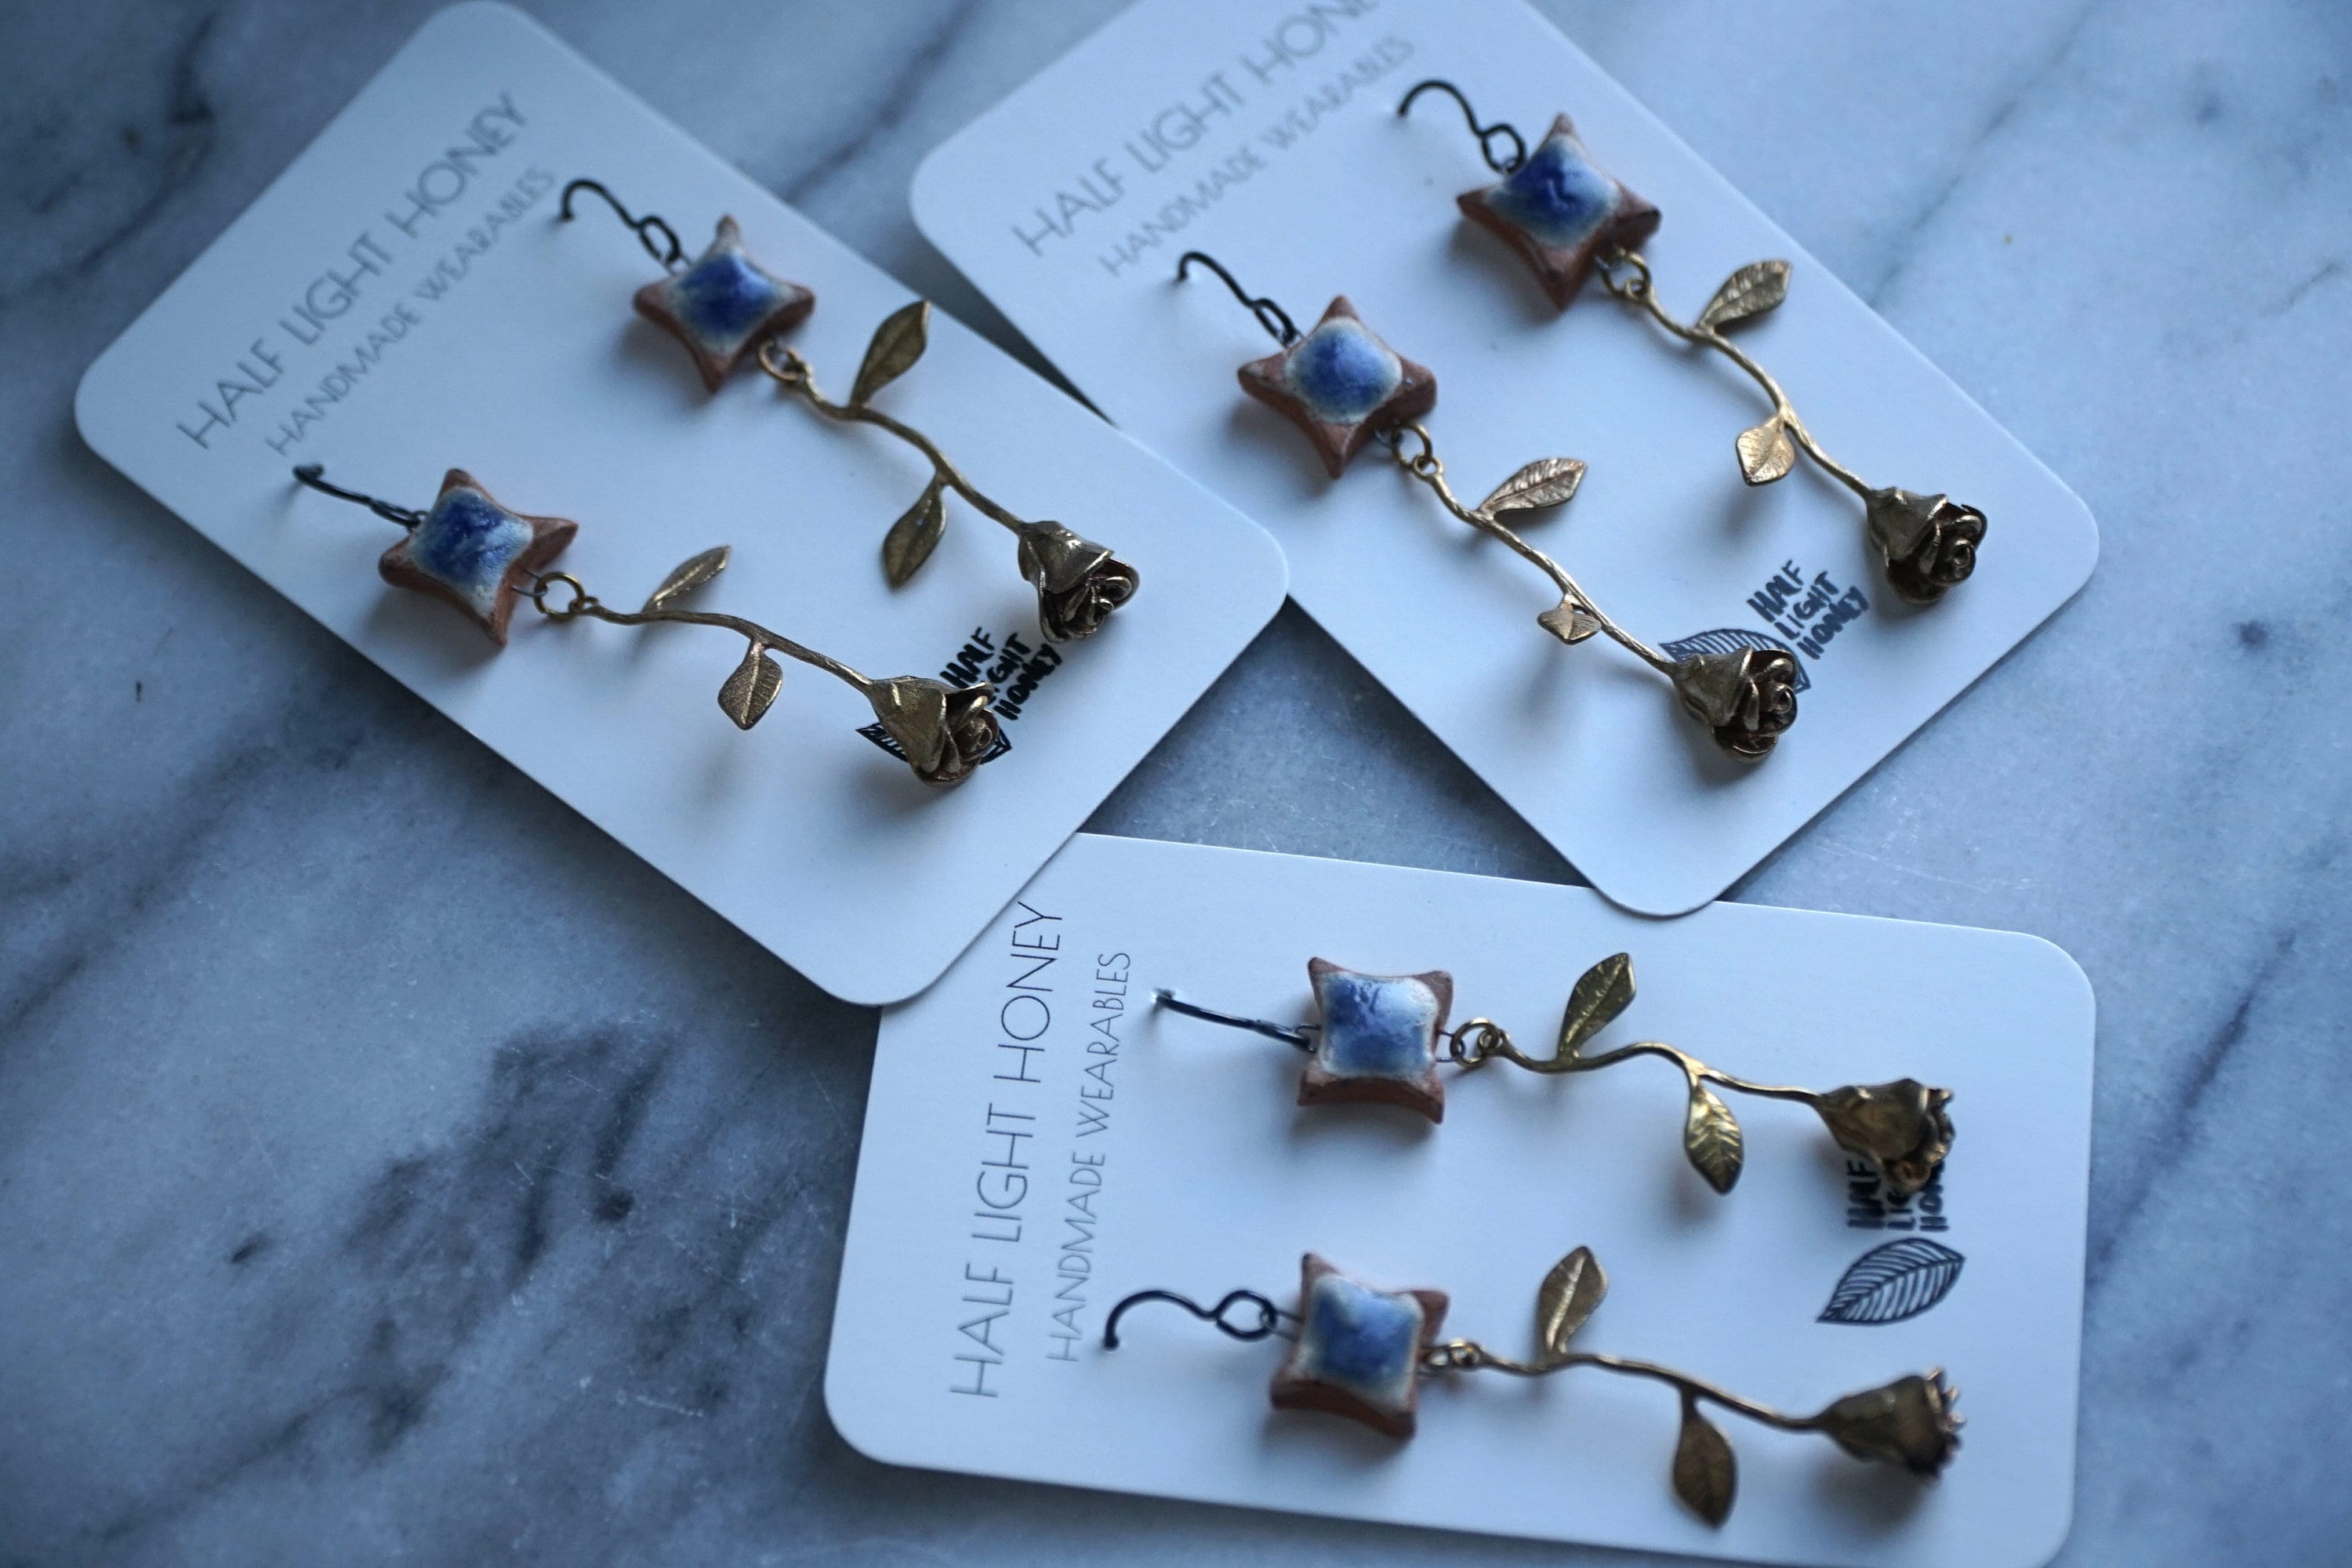 Mixed Media Earrings - Stoneware Earrings with Brass Charm Component - Hypoallergenic Earrings - Dangle Earrings - Art Jewelry